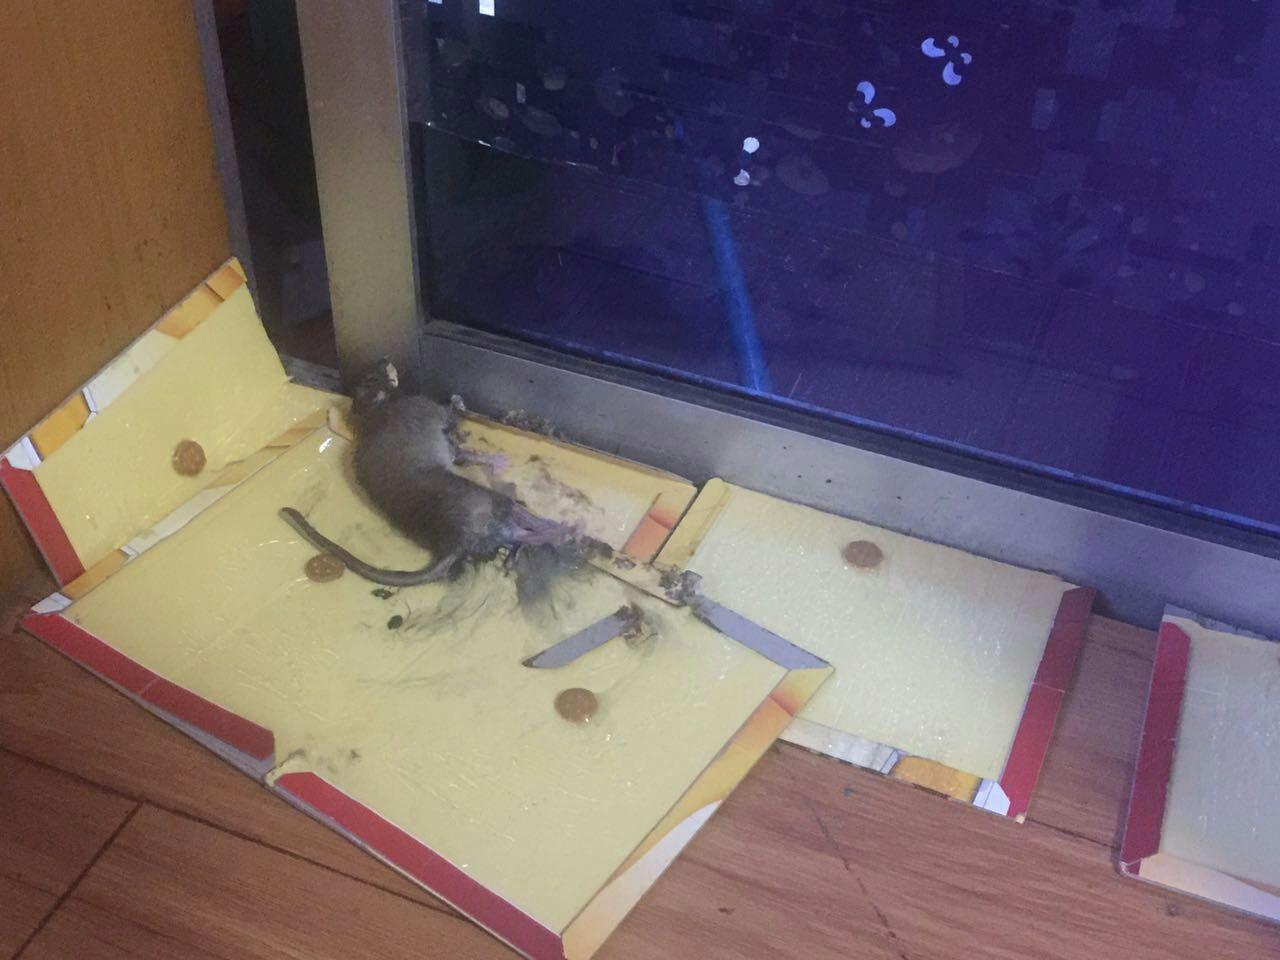 老鼠躲在冰箱压缩机图图片